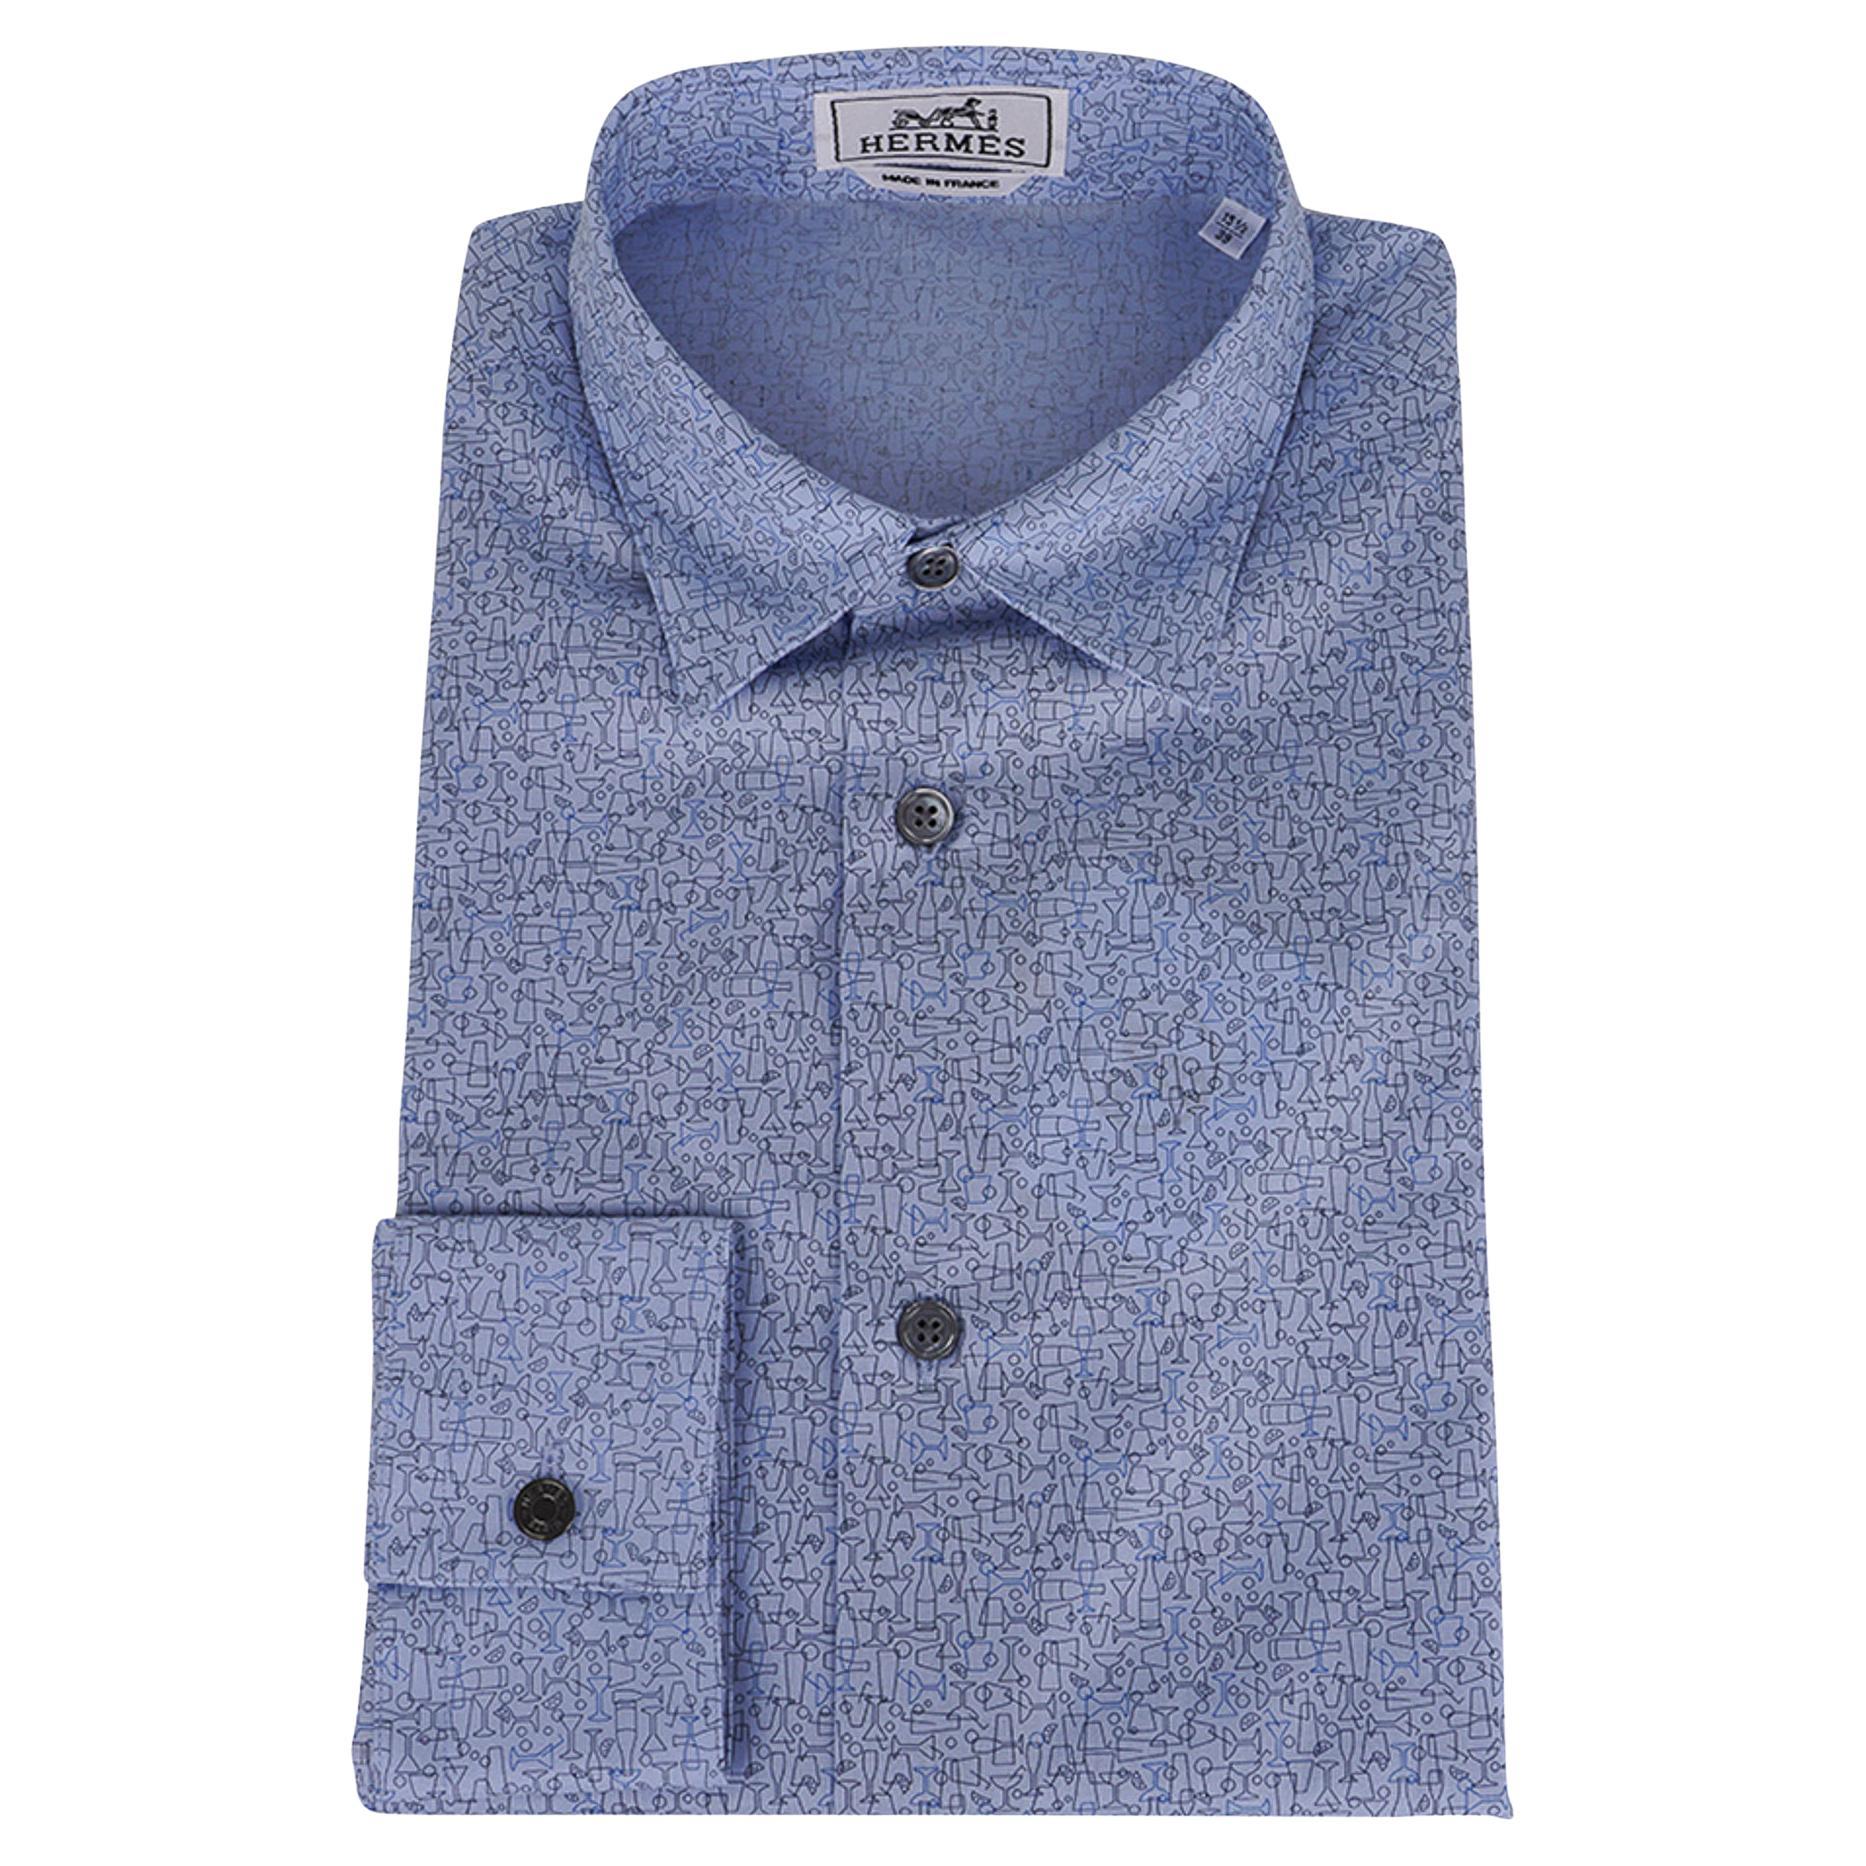 Hermes Men's Cheers ! Chemise Coton Bleu Pale Button Down Shirt 39 / 15.5 New en vente